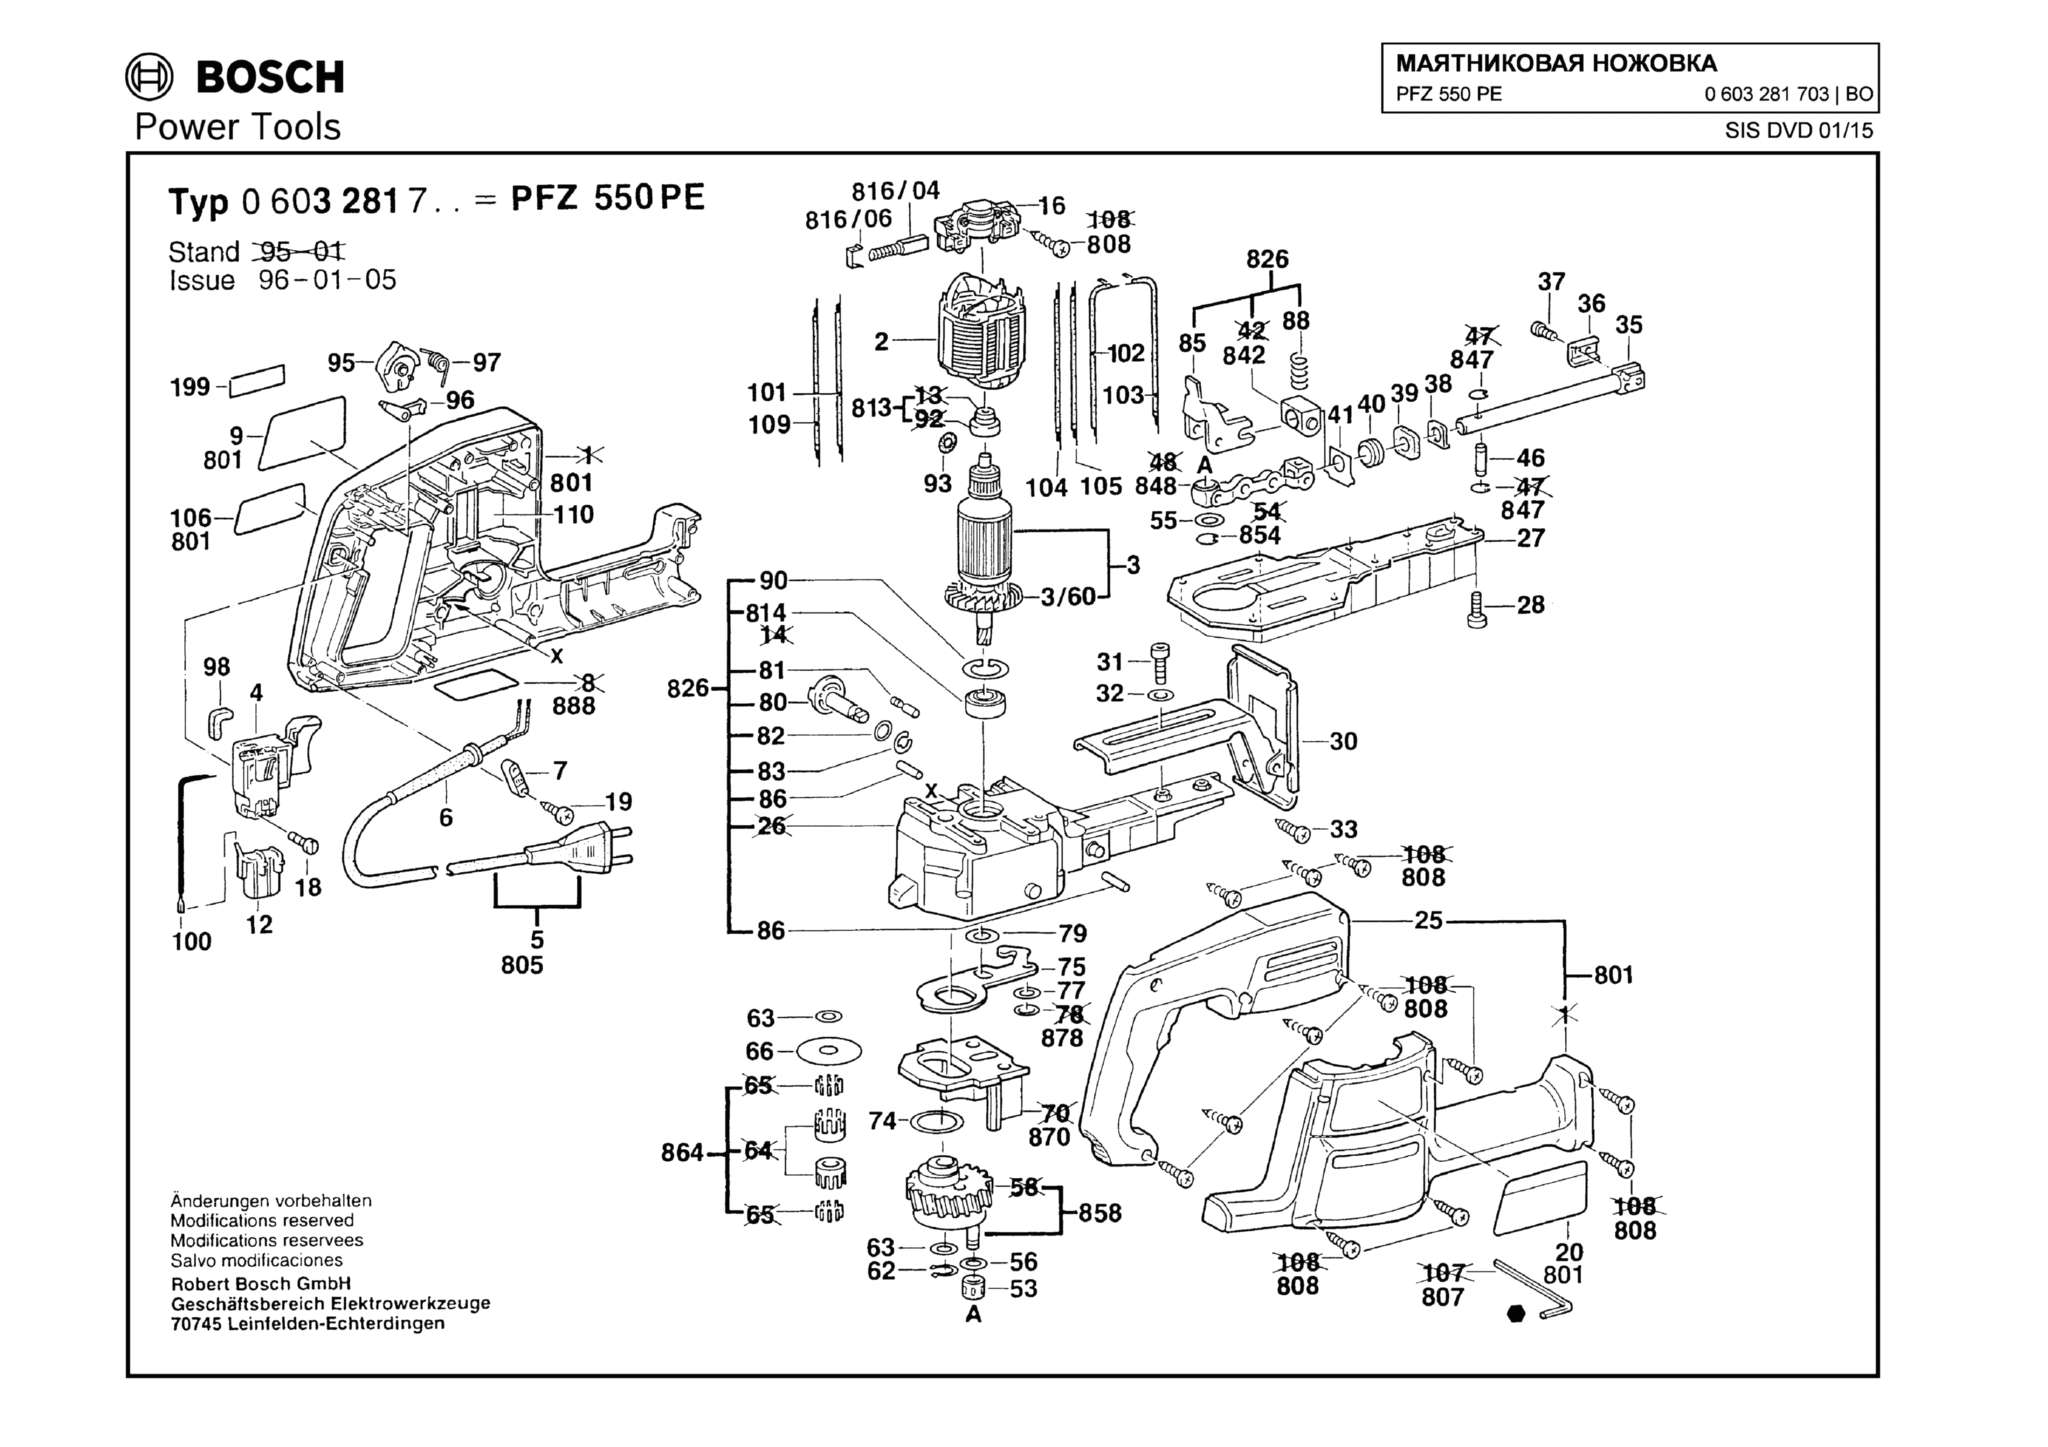 Запчасти, схема и деталировка Bosch PFZ 550 PE (ТИП 0603281703)